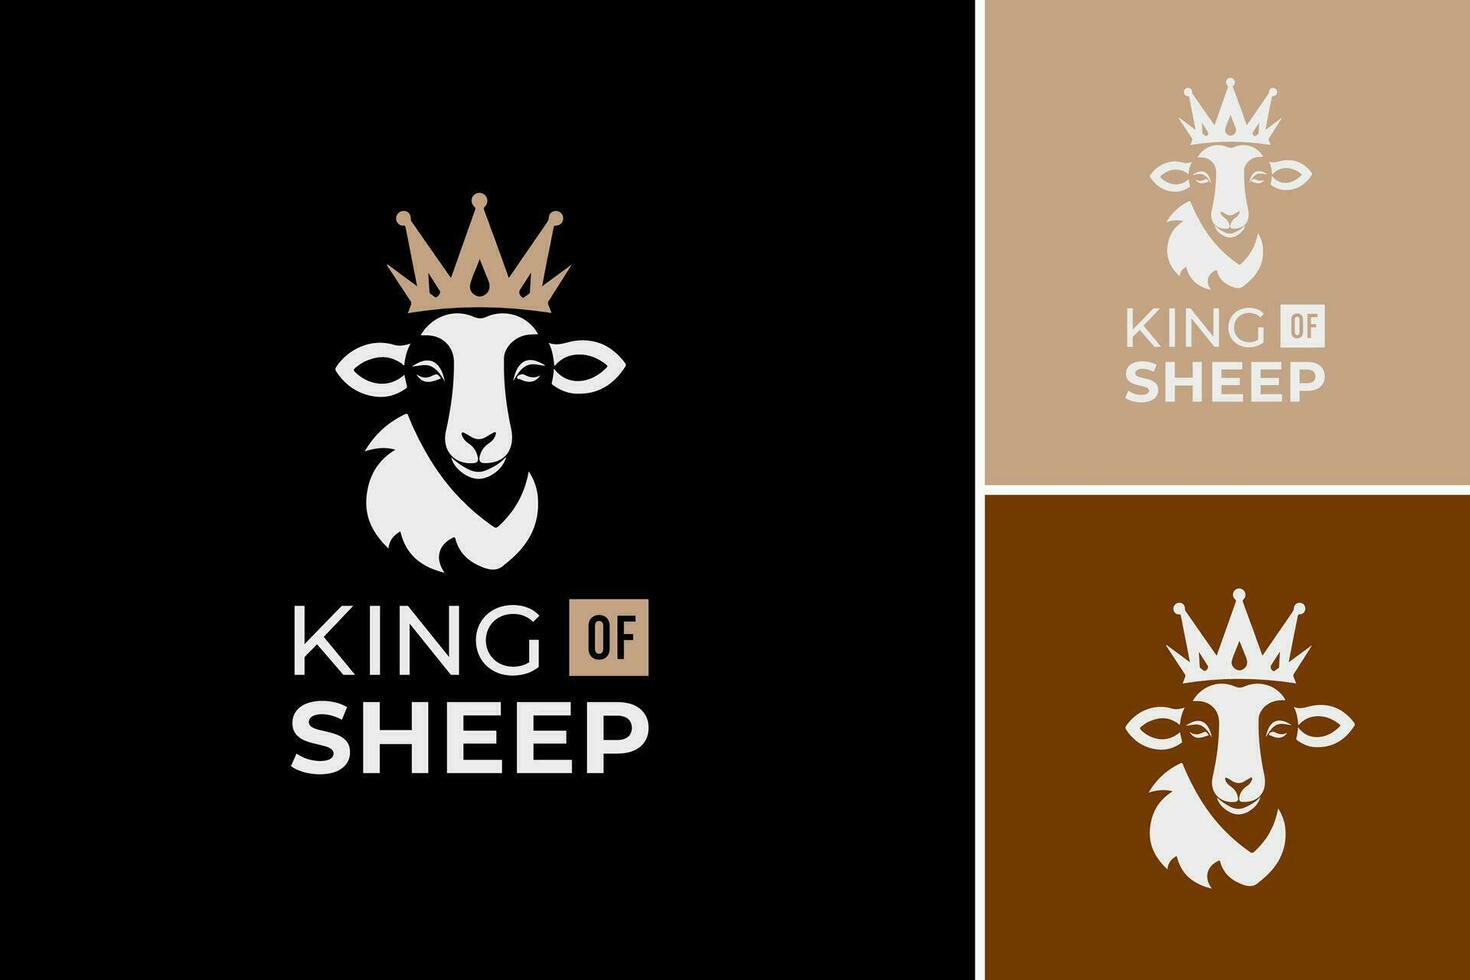 kung av får logotyp är en design tillgång lämplig för en varumärke eller företag relaterad till får jordbruk eller ull produktion. den fångar de väsen av ledarskap och dominans inom de får industri. vektor